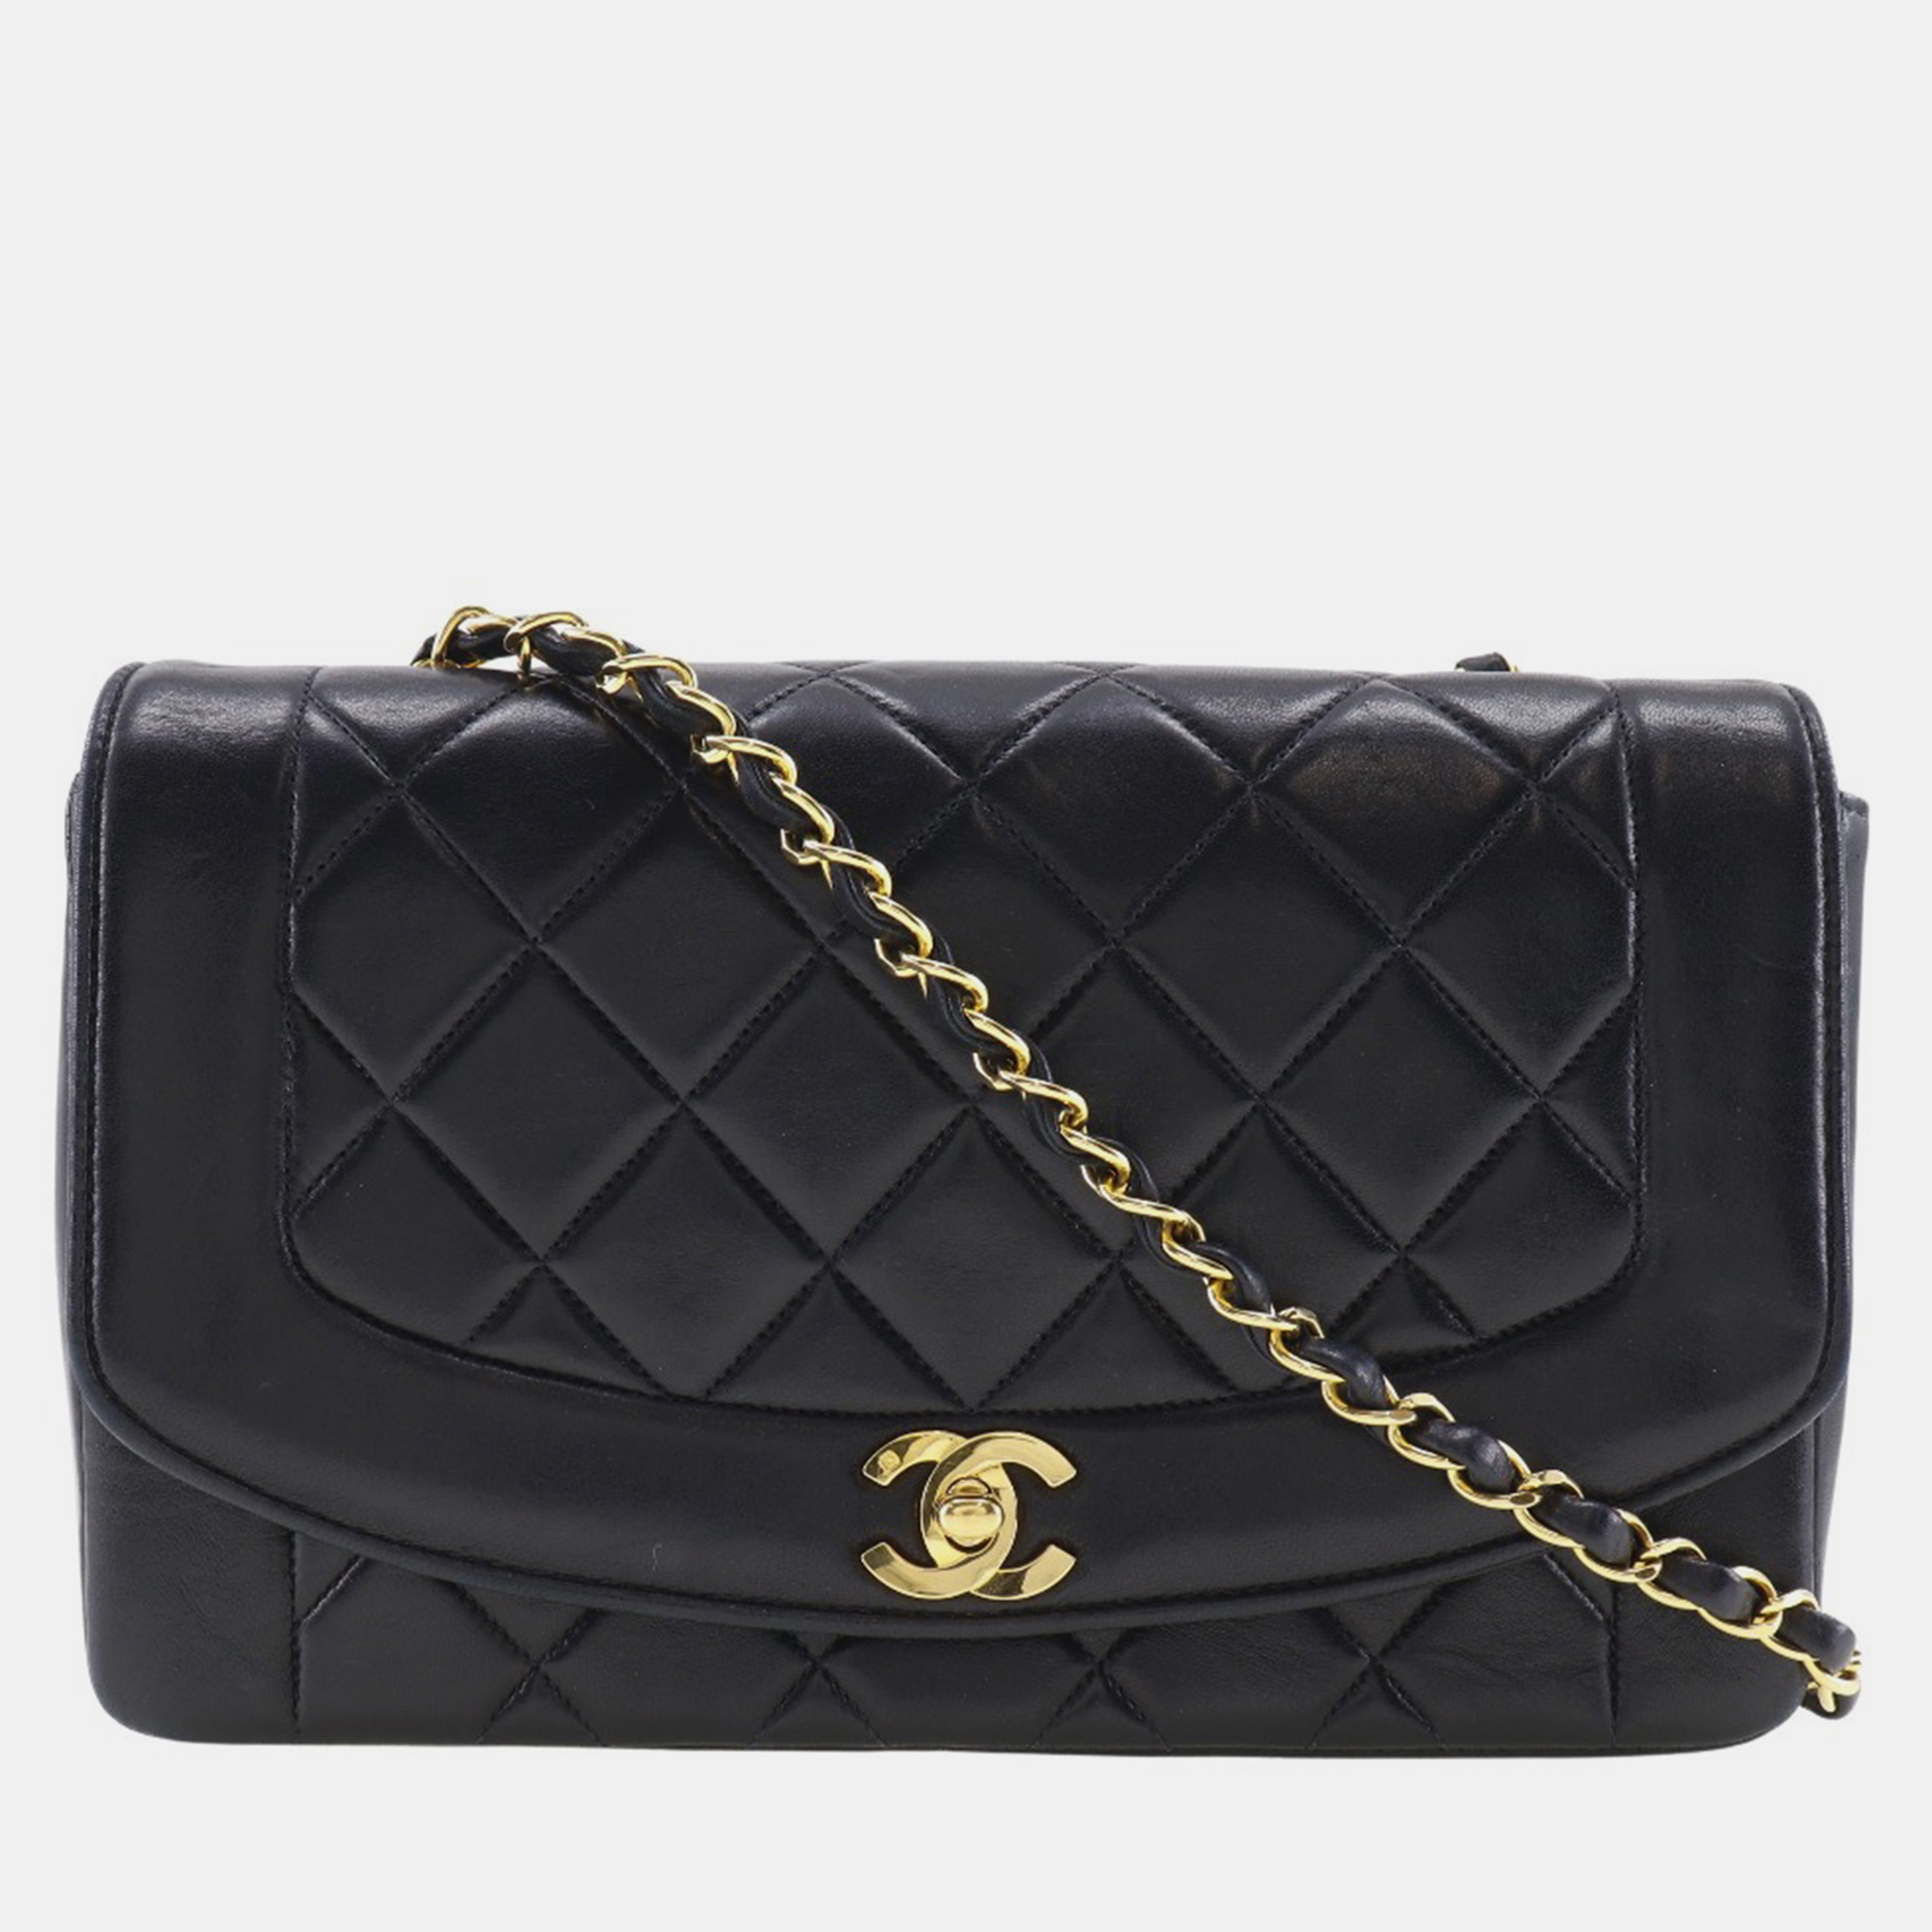 

Chanel Black Leather Vintage Diana Flap Bag